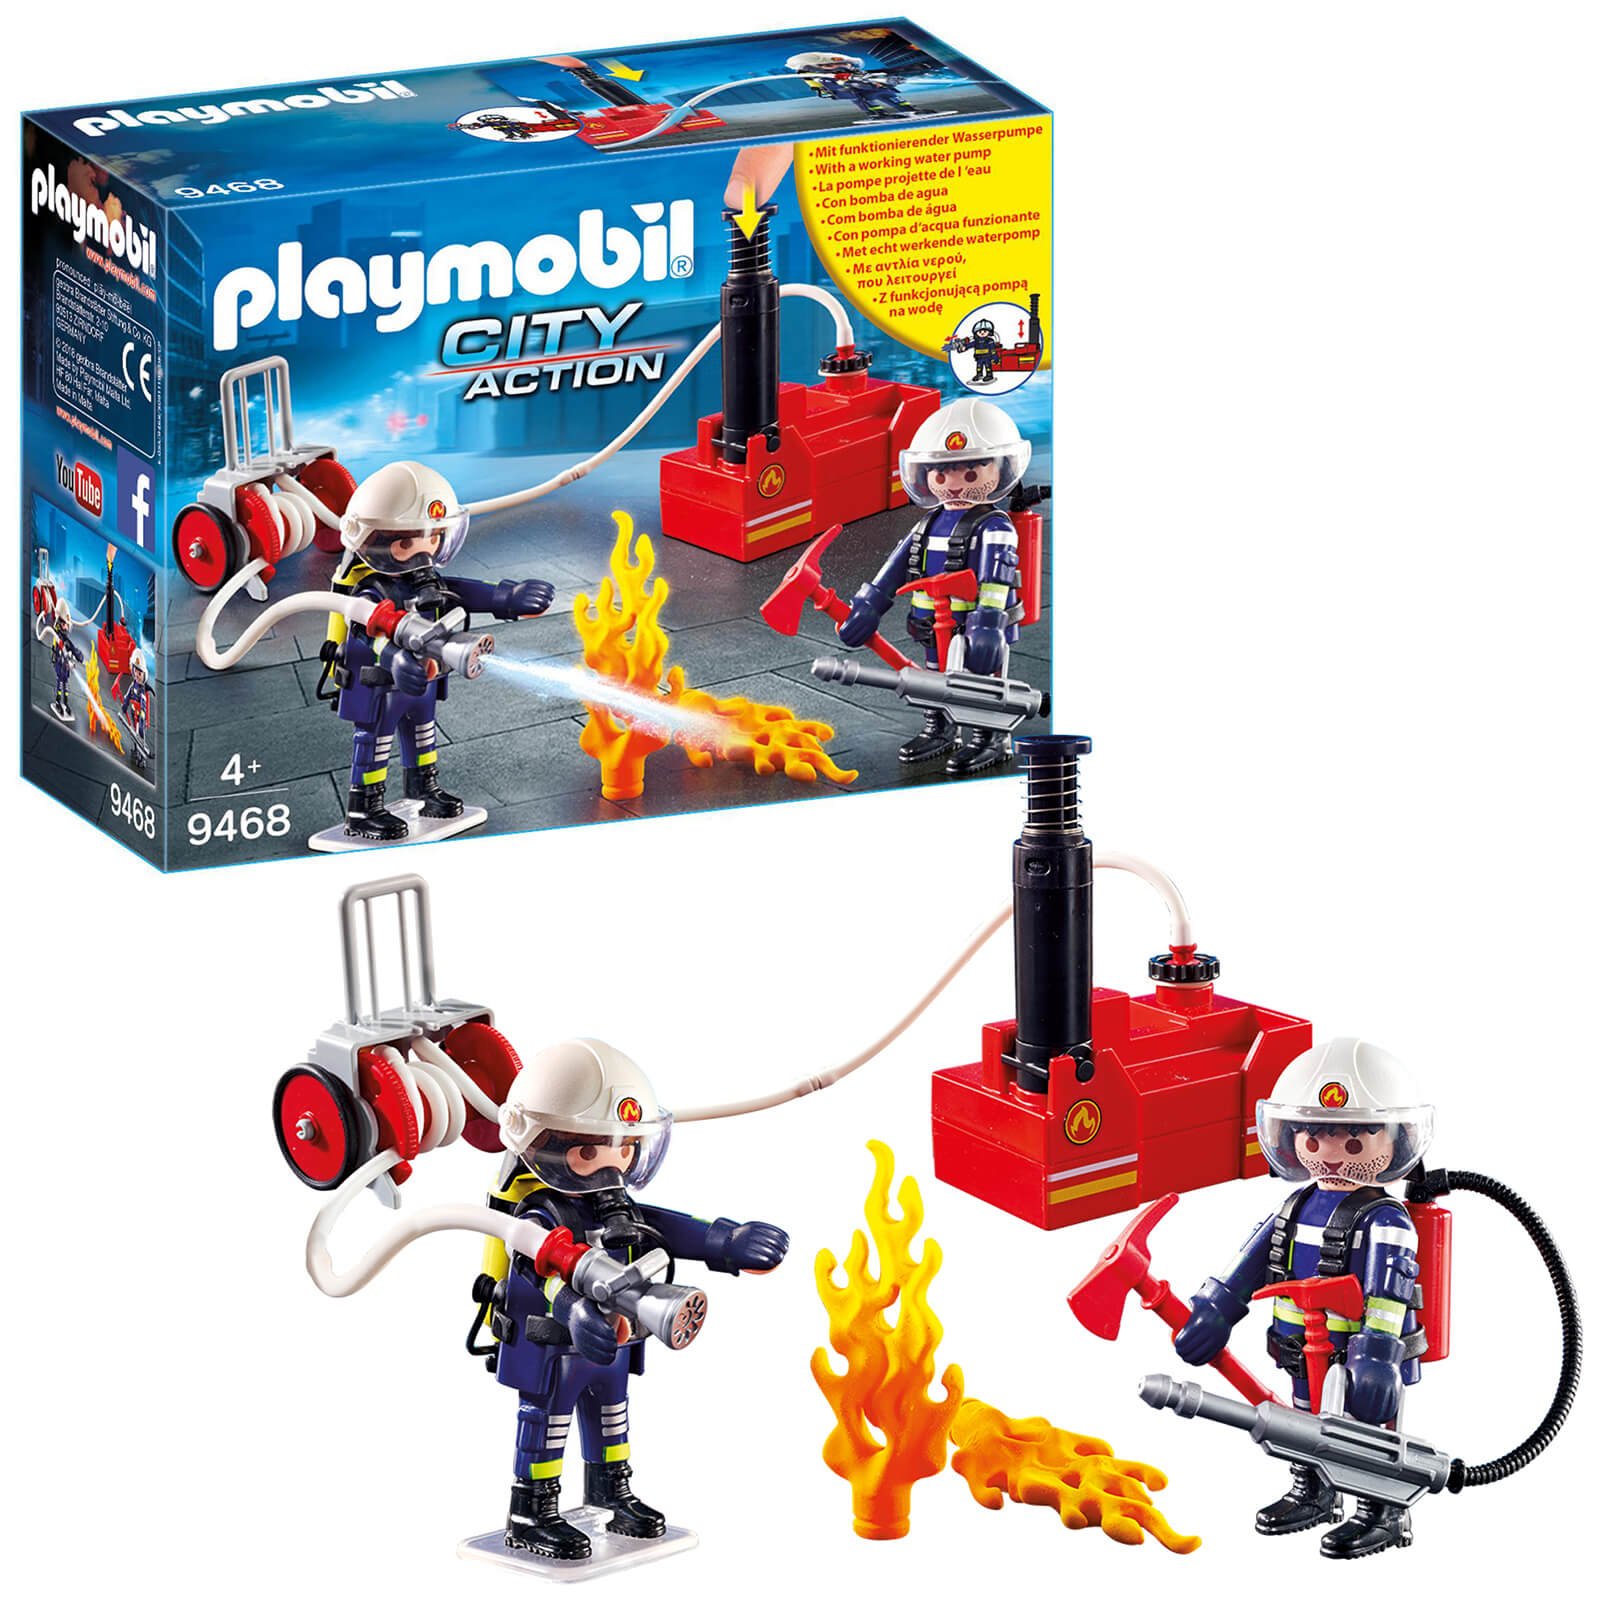 Playmobil City Action Bomberos con bomba de agua (9468)